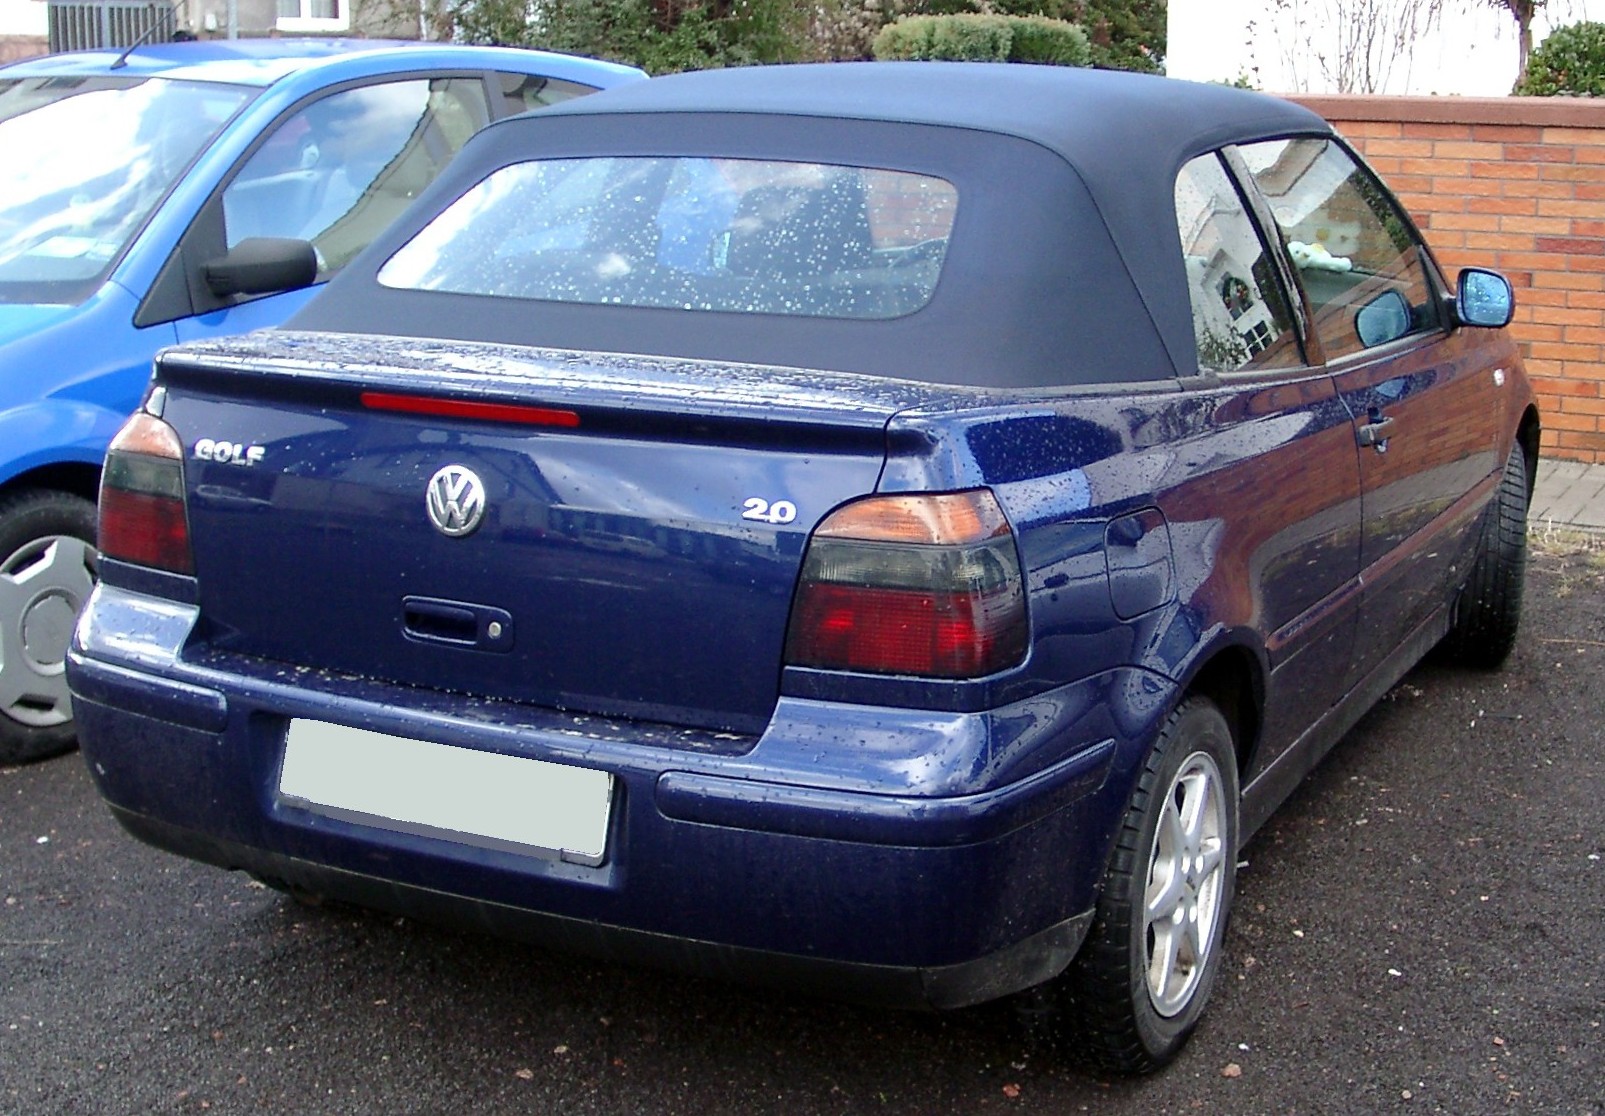 Fil:VW Golf rear 20080106.jpg Wikipedia, den frie